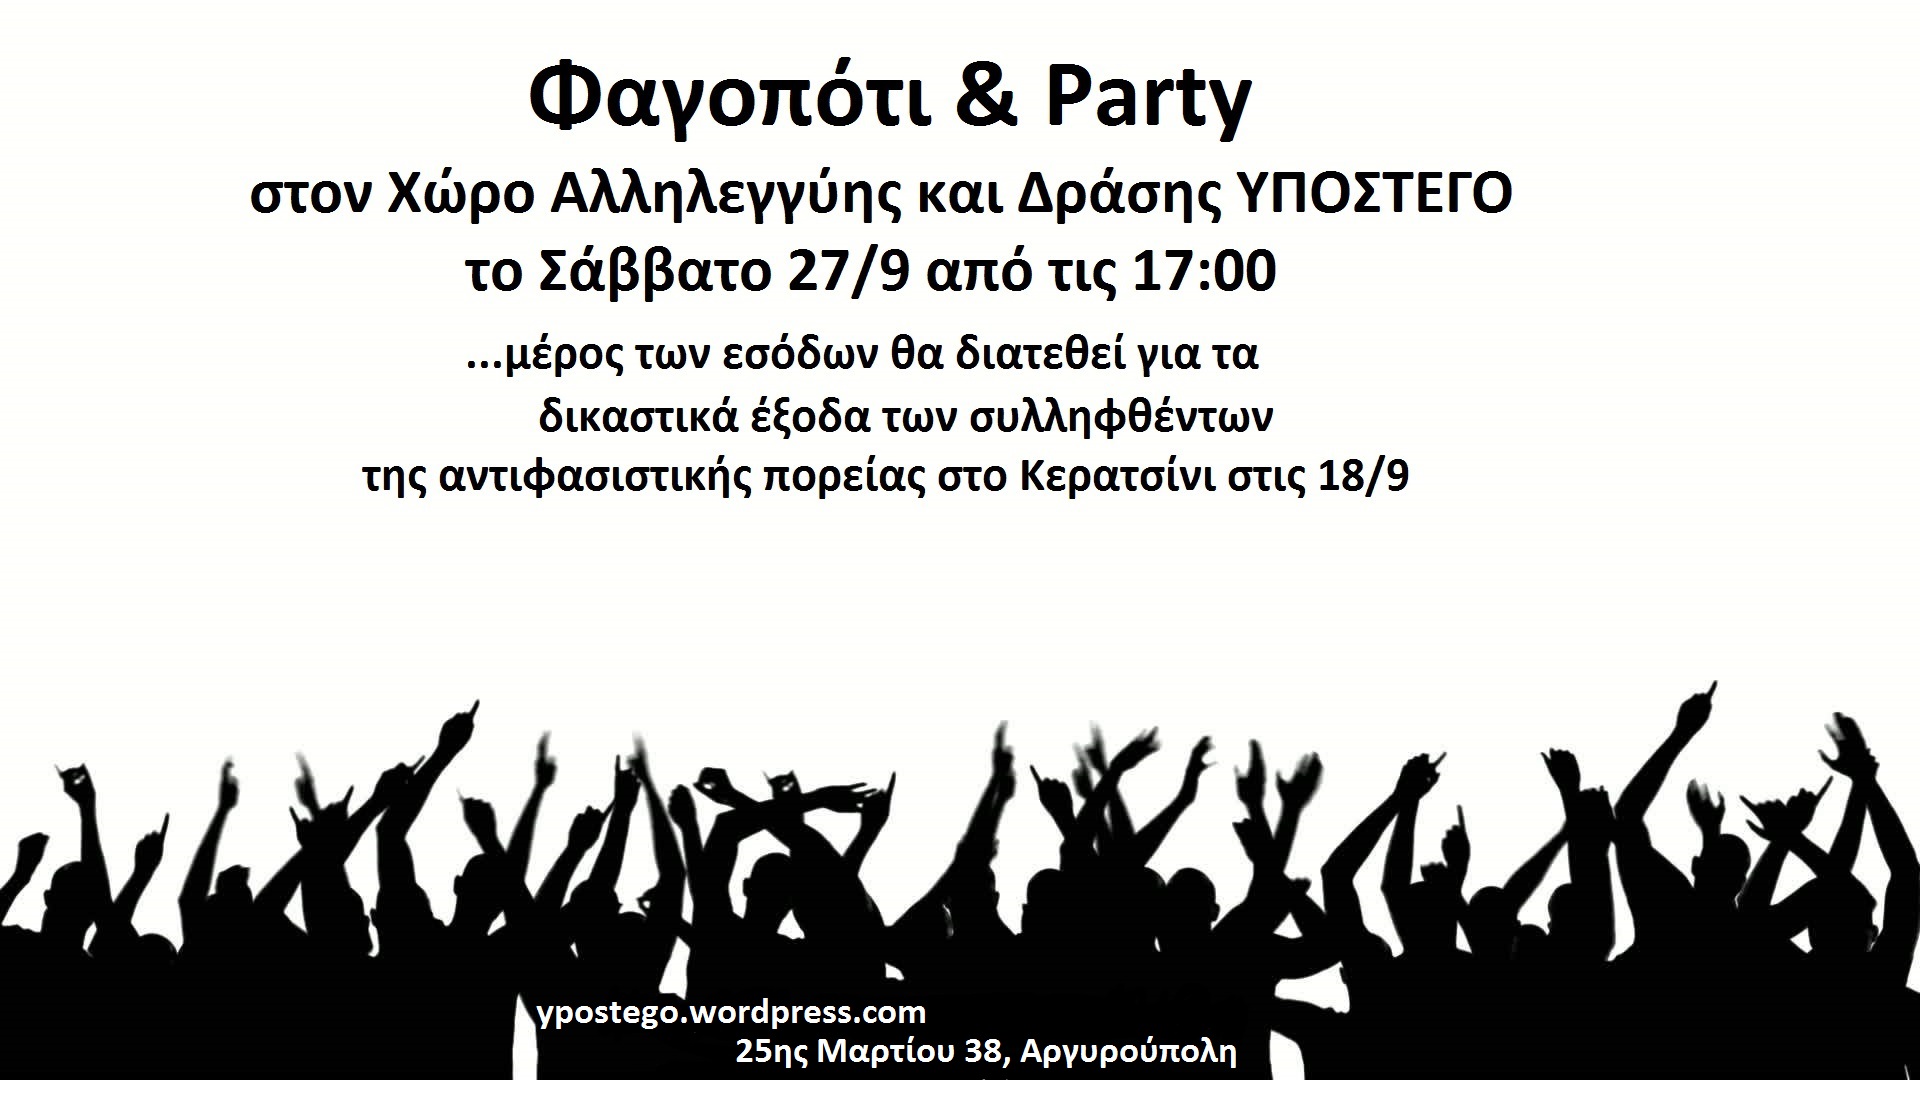 Υπόστεγο : Σάββατο 27/09, 17:00 – Φαγοπότι & Πάρτυ… μέρος των εσόδων θα διατεθεί για οικονομική ενίσχυση των συλληφθέντων στο Κερατσίνι